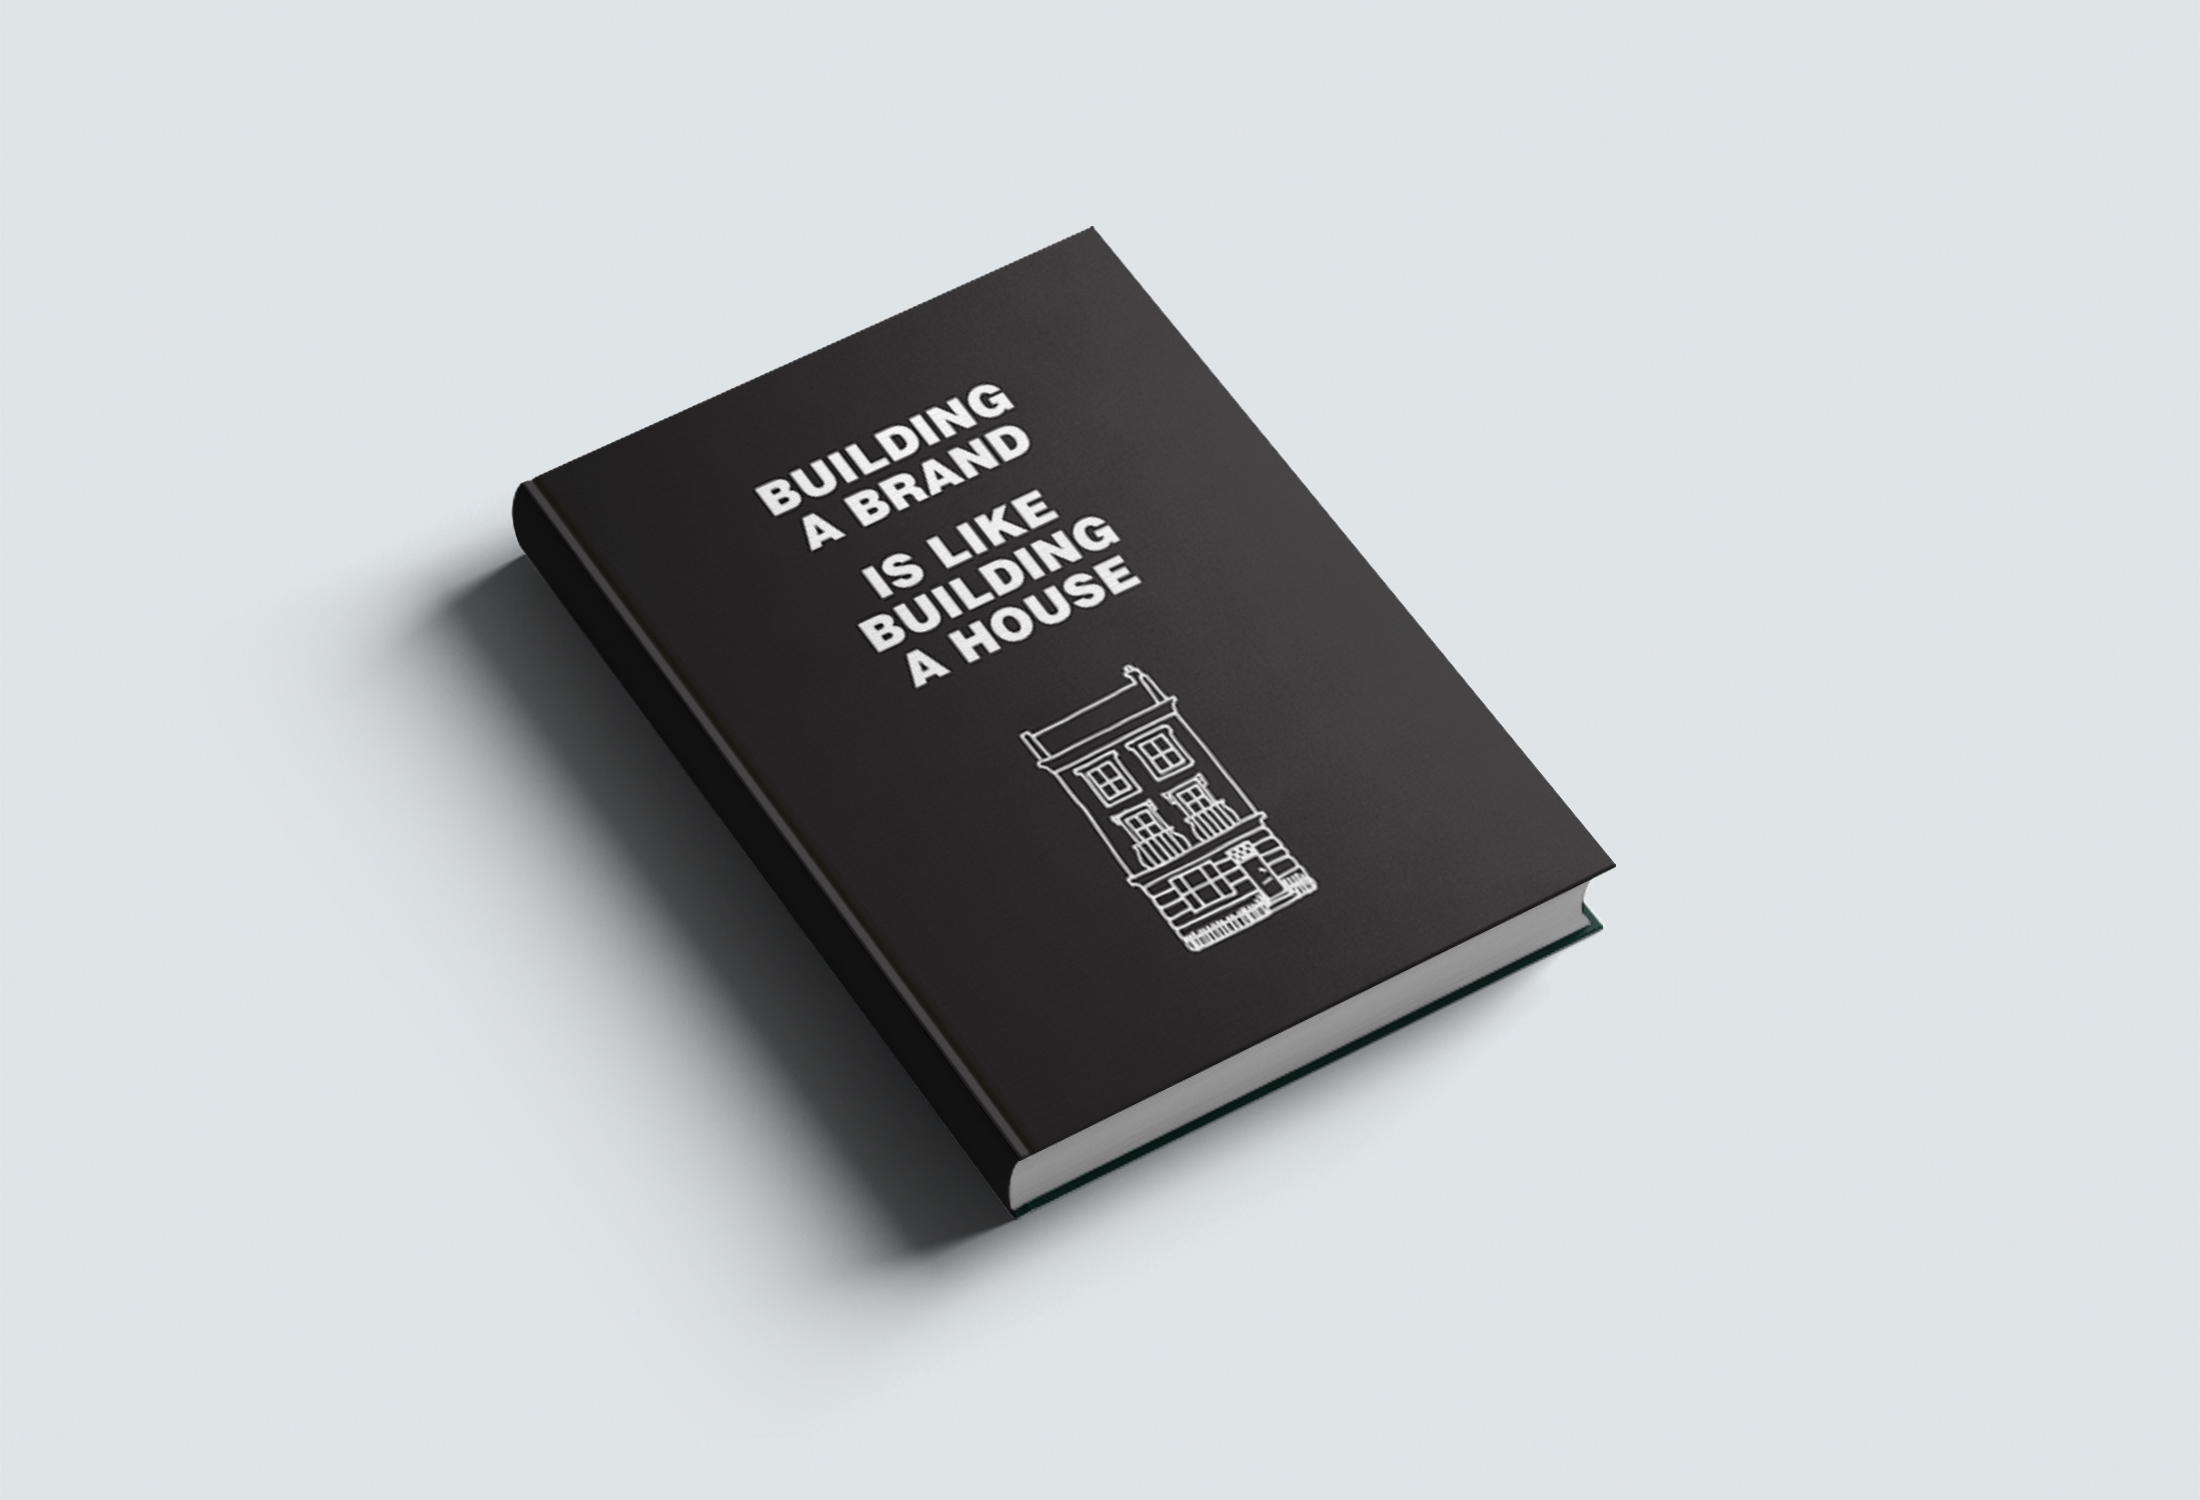 id 19ebookmienphi 5 iDesign | 19 Ebook miễn phí mà designer nên đọc (Phần 1)